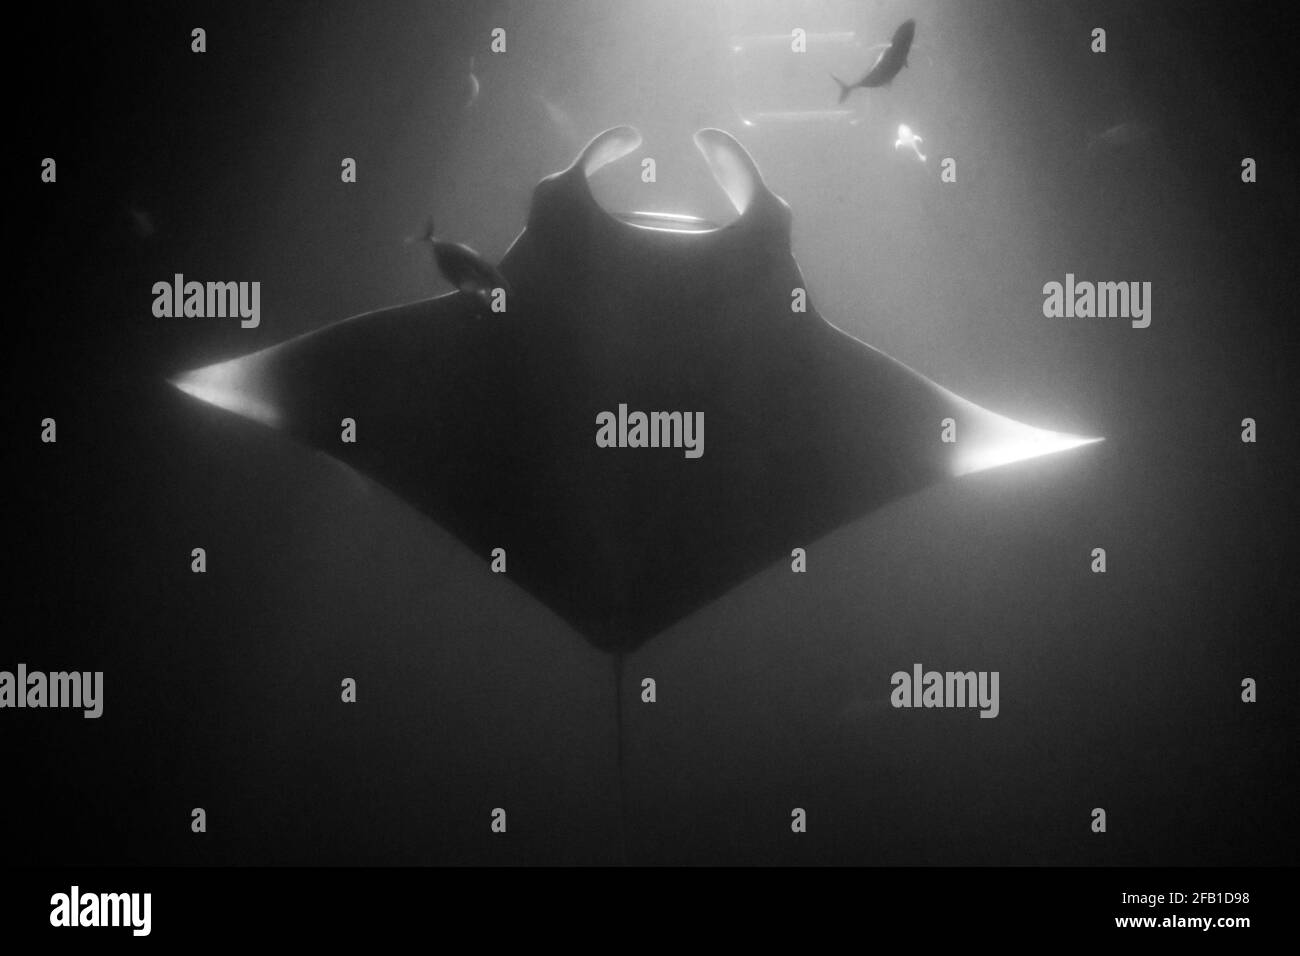 manta swimming up at surface at night in spotlight Stock Photo